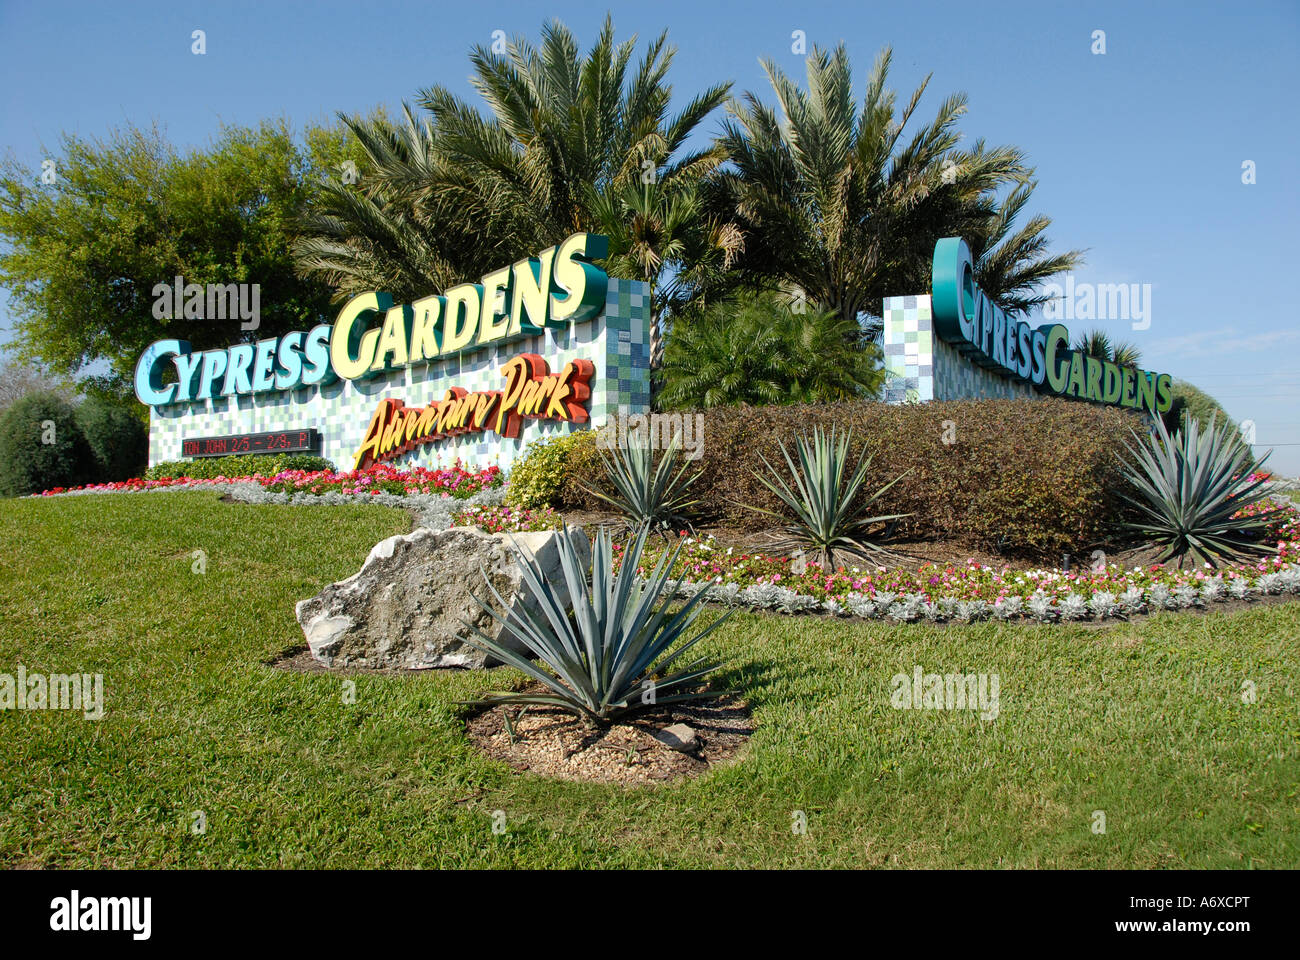 Cypress Garten Winter Haven Florida Uns Stockfoto Bild 11663951